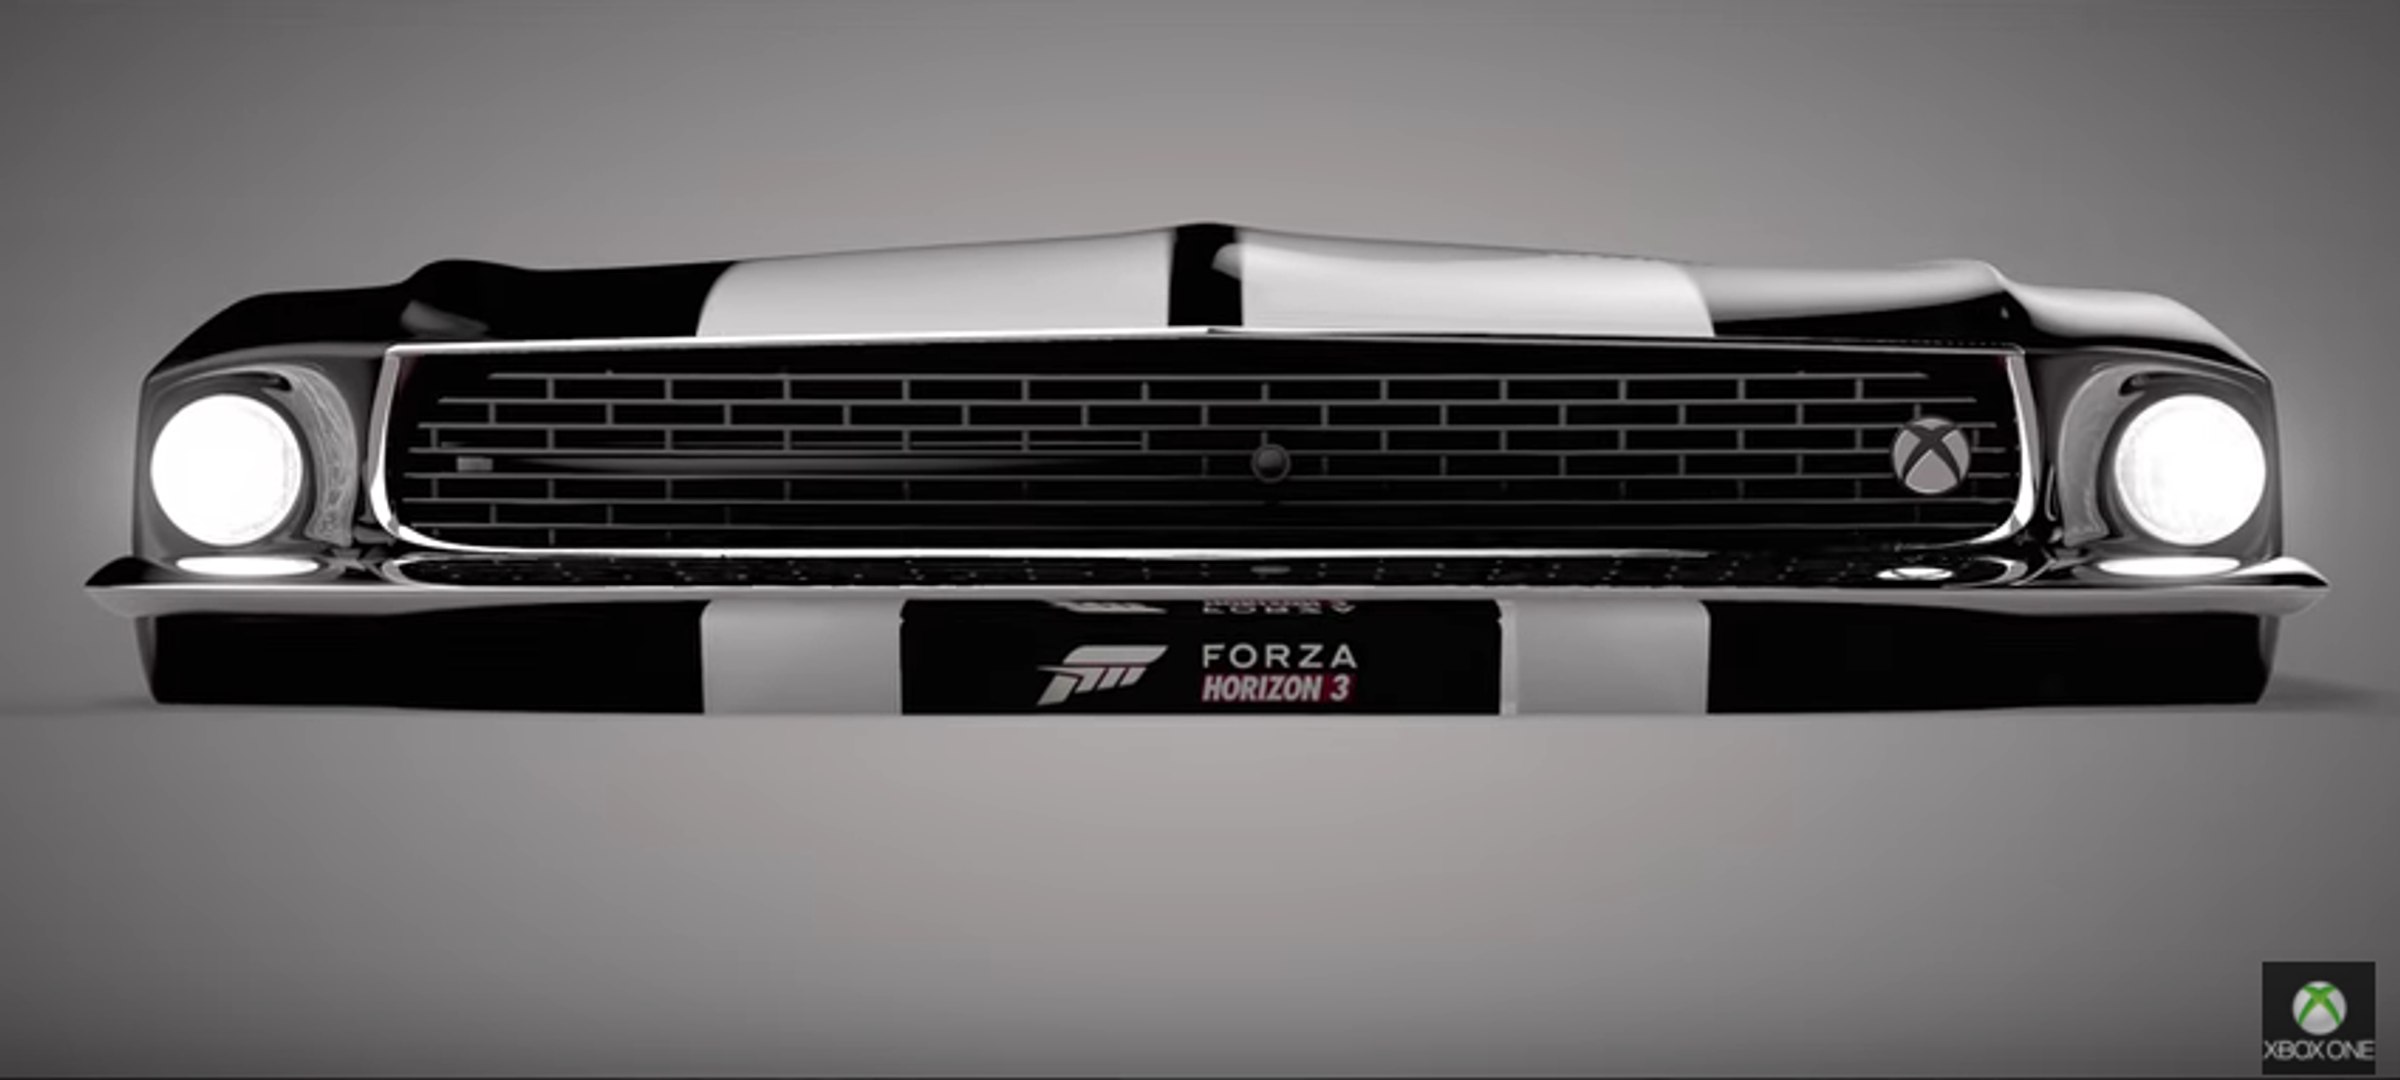 VÍDEO: la Xbox One S Forza Horizon 3... ¡Personalizadas de Mustang y  Lamborghini! - Vídeo Dailymotion